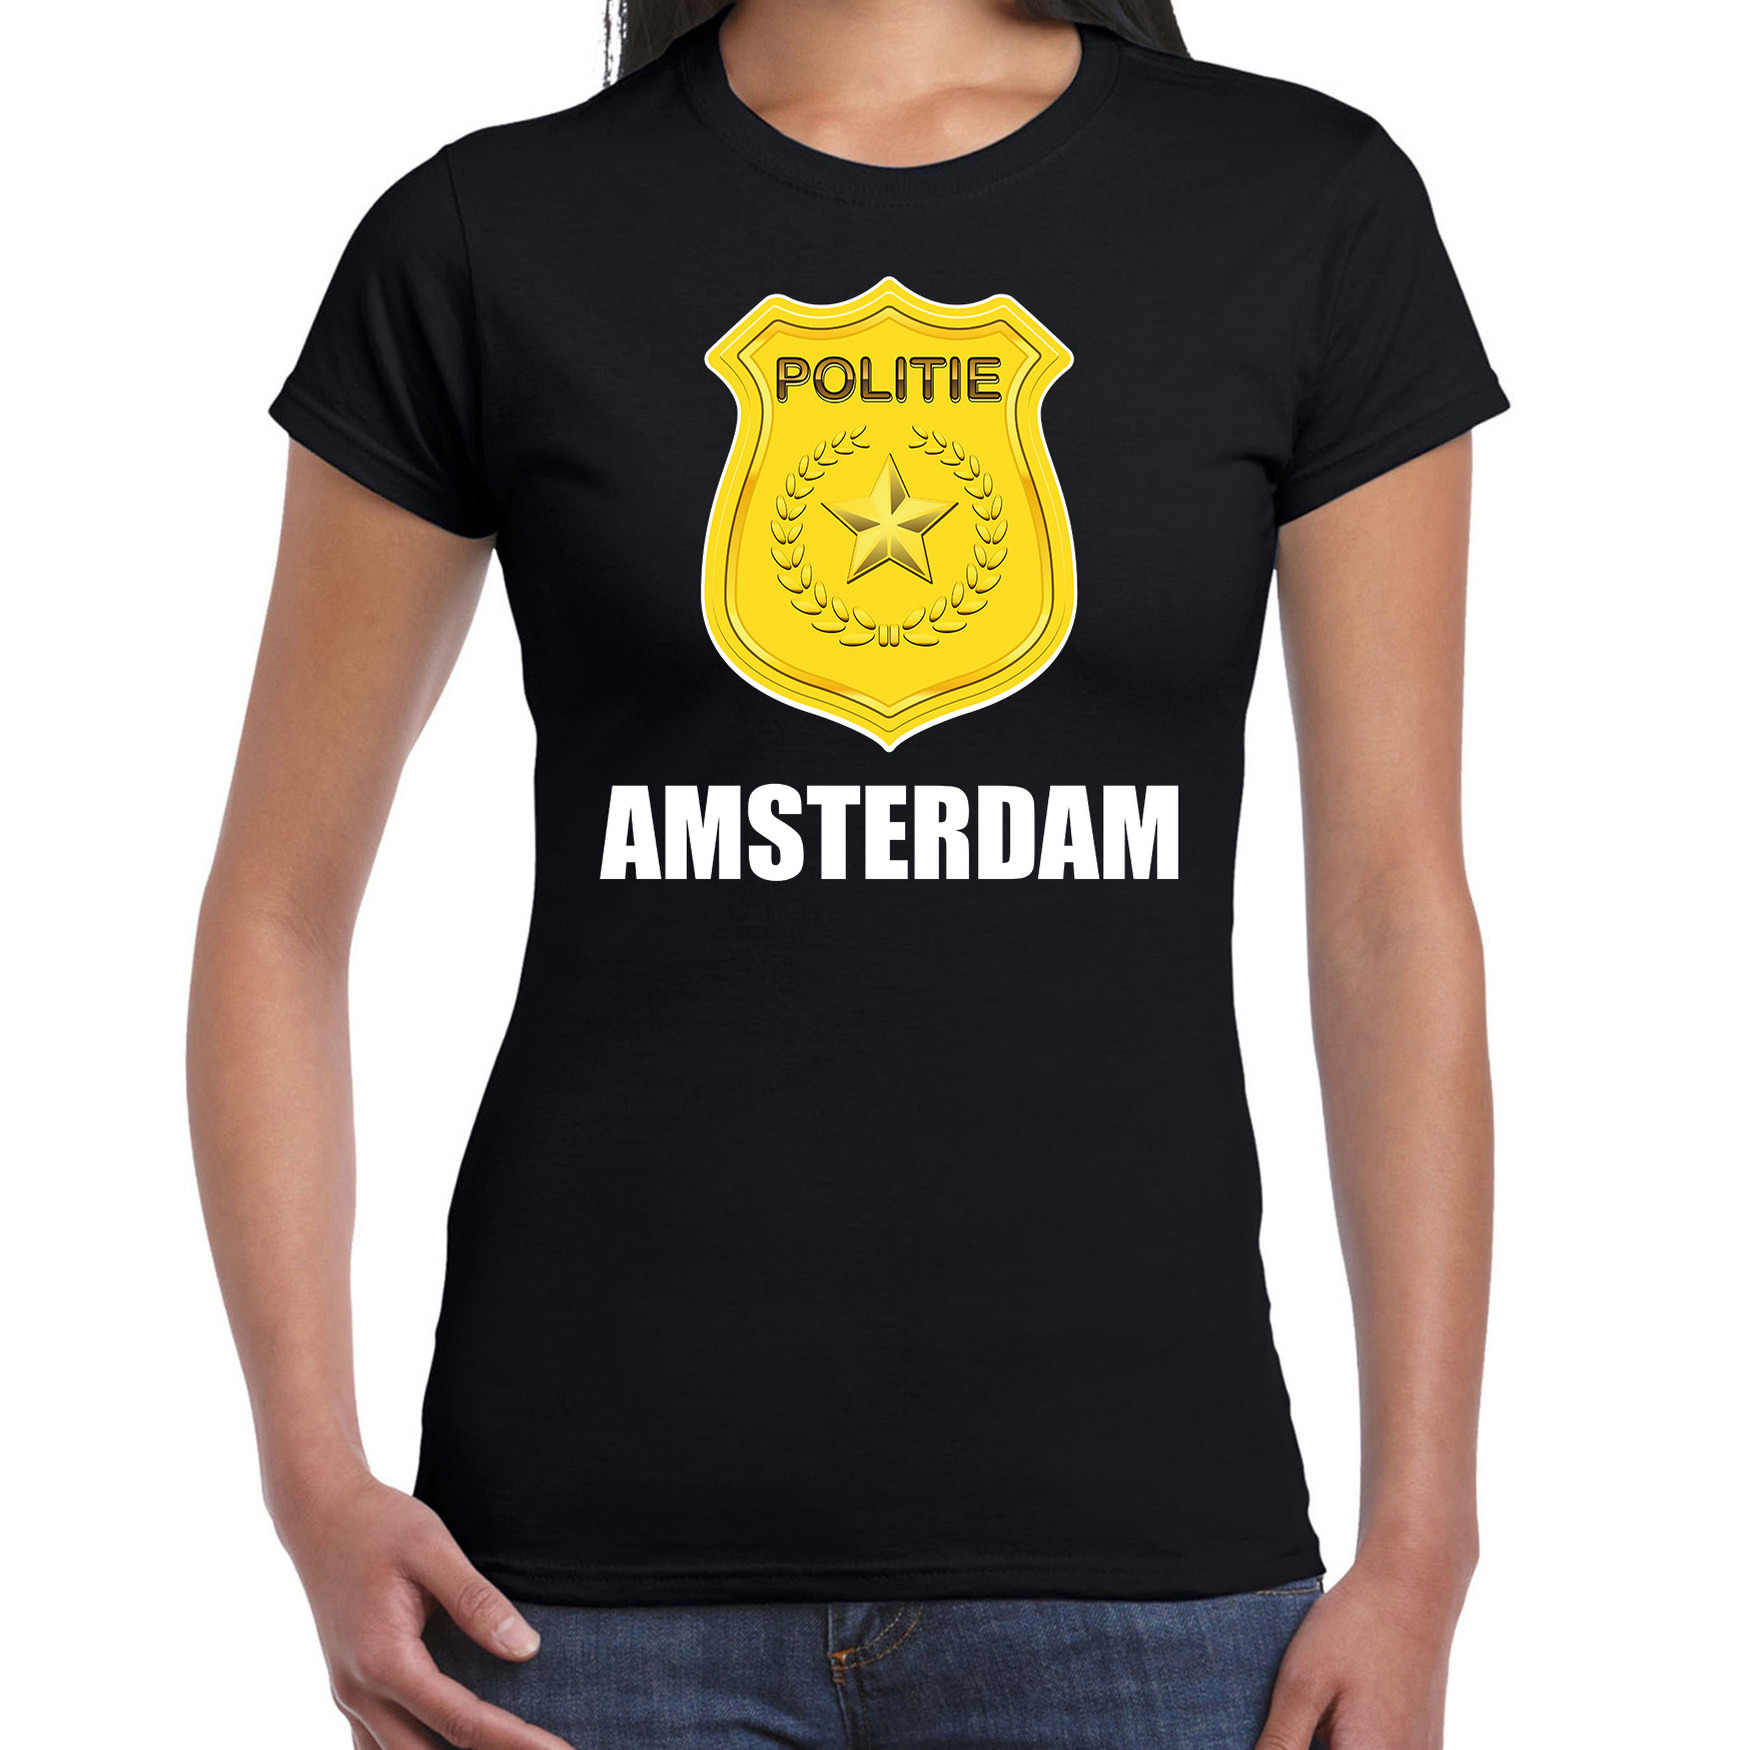 Politie embleem Amsterdam carnaval verkleed t-shirt zwart voor dames